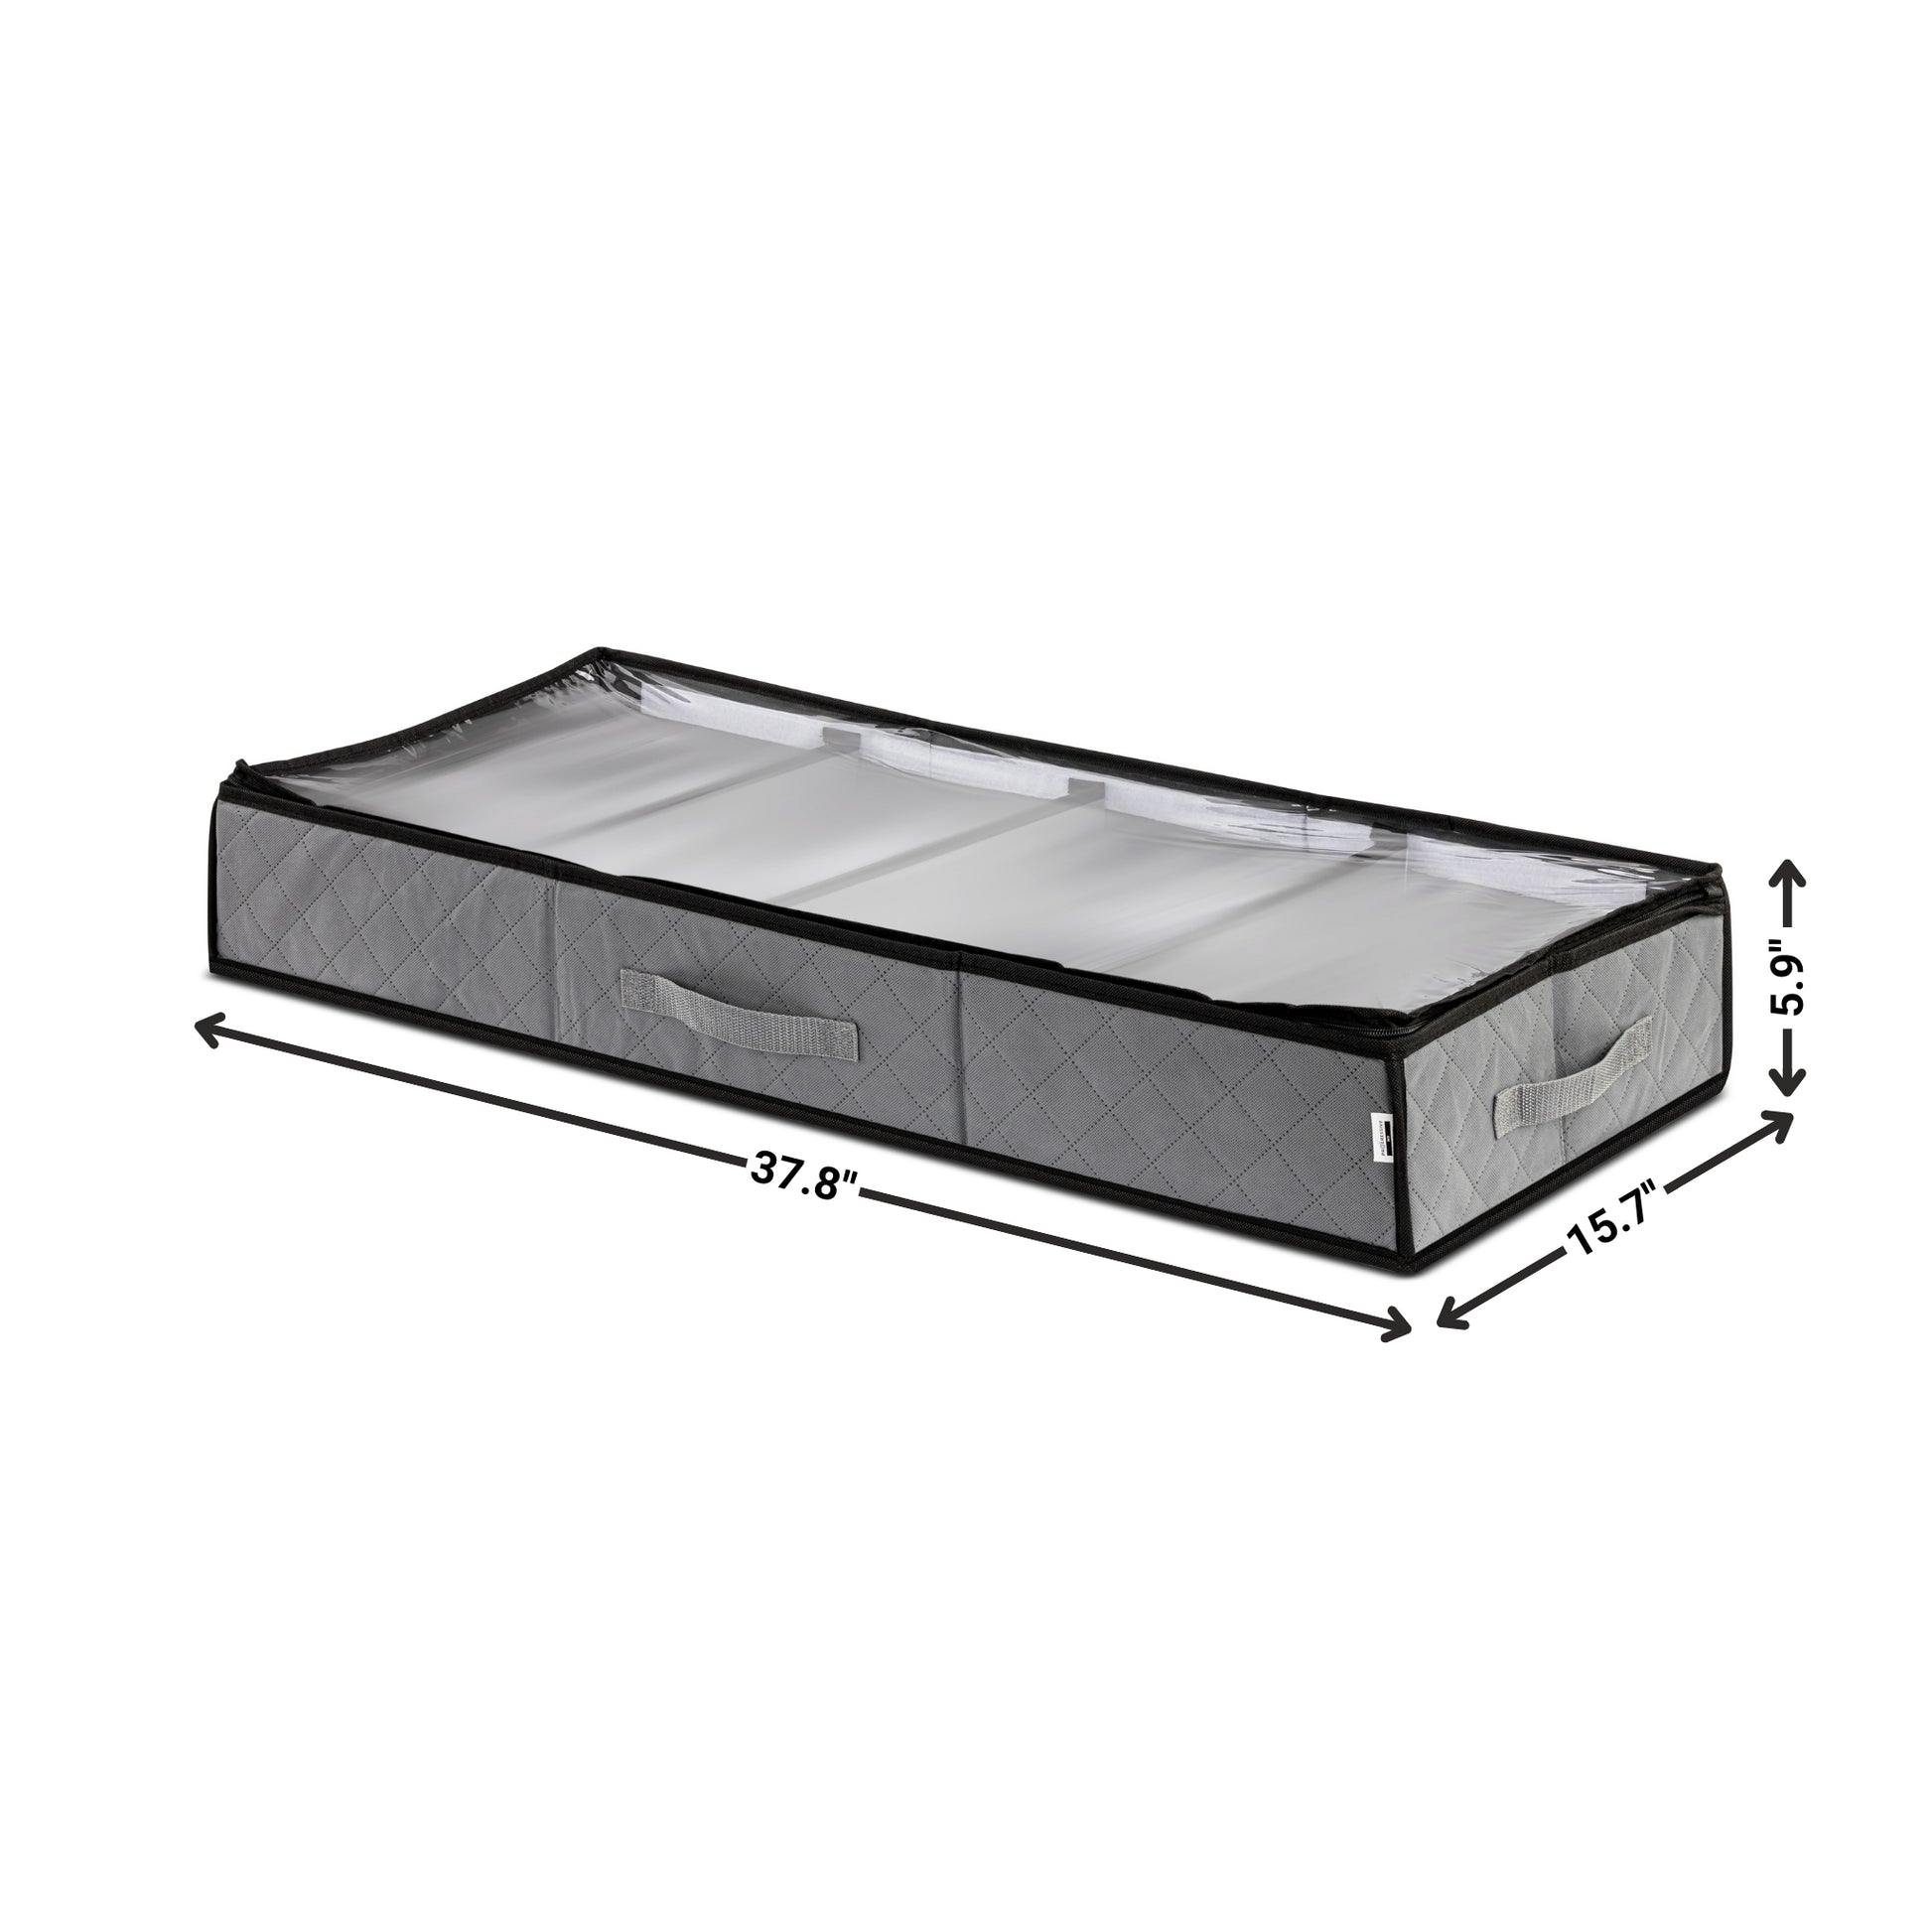 Under Bed Storage dimensions